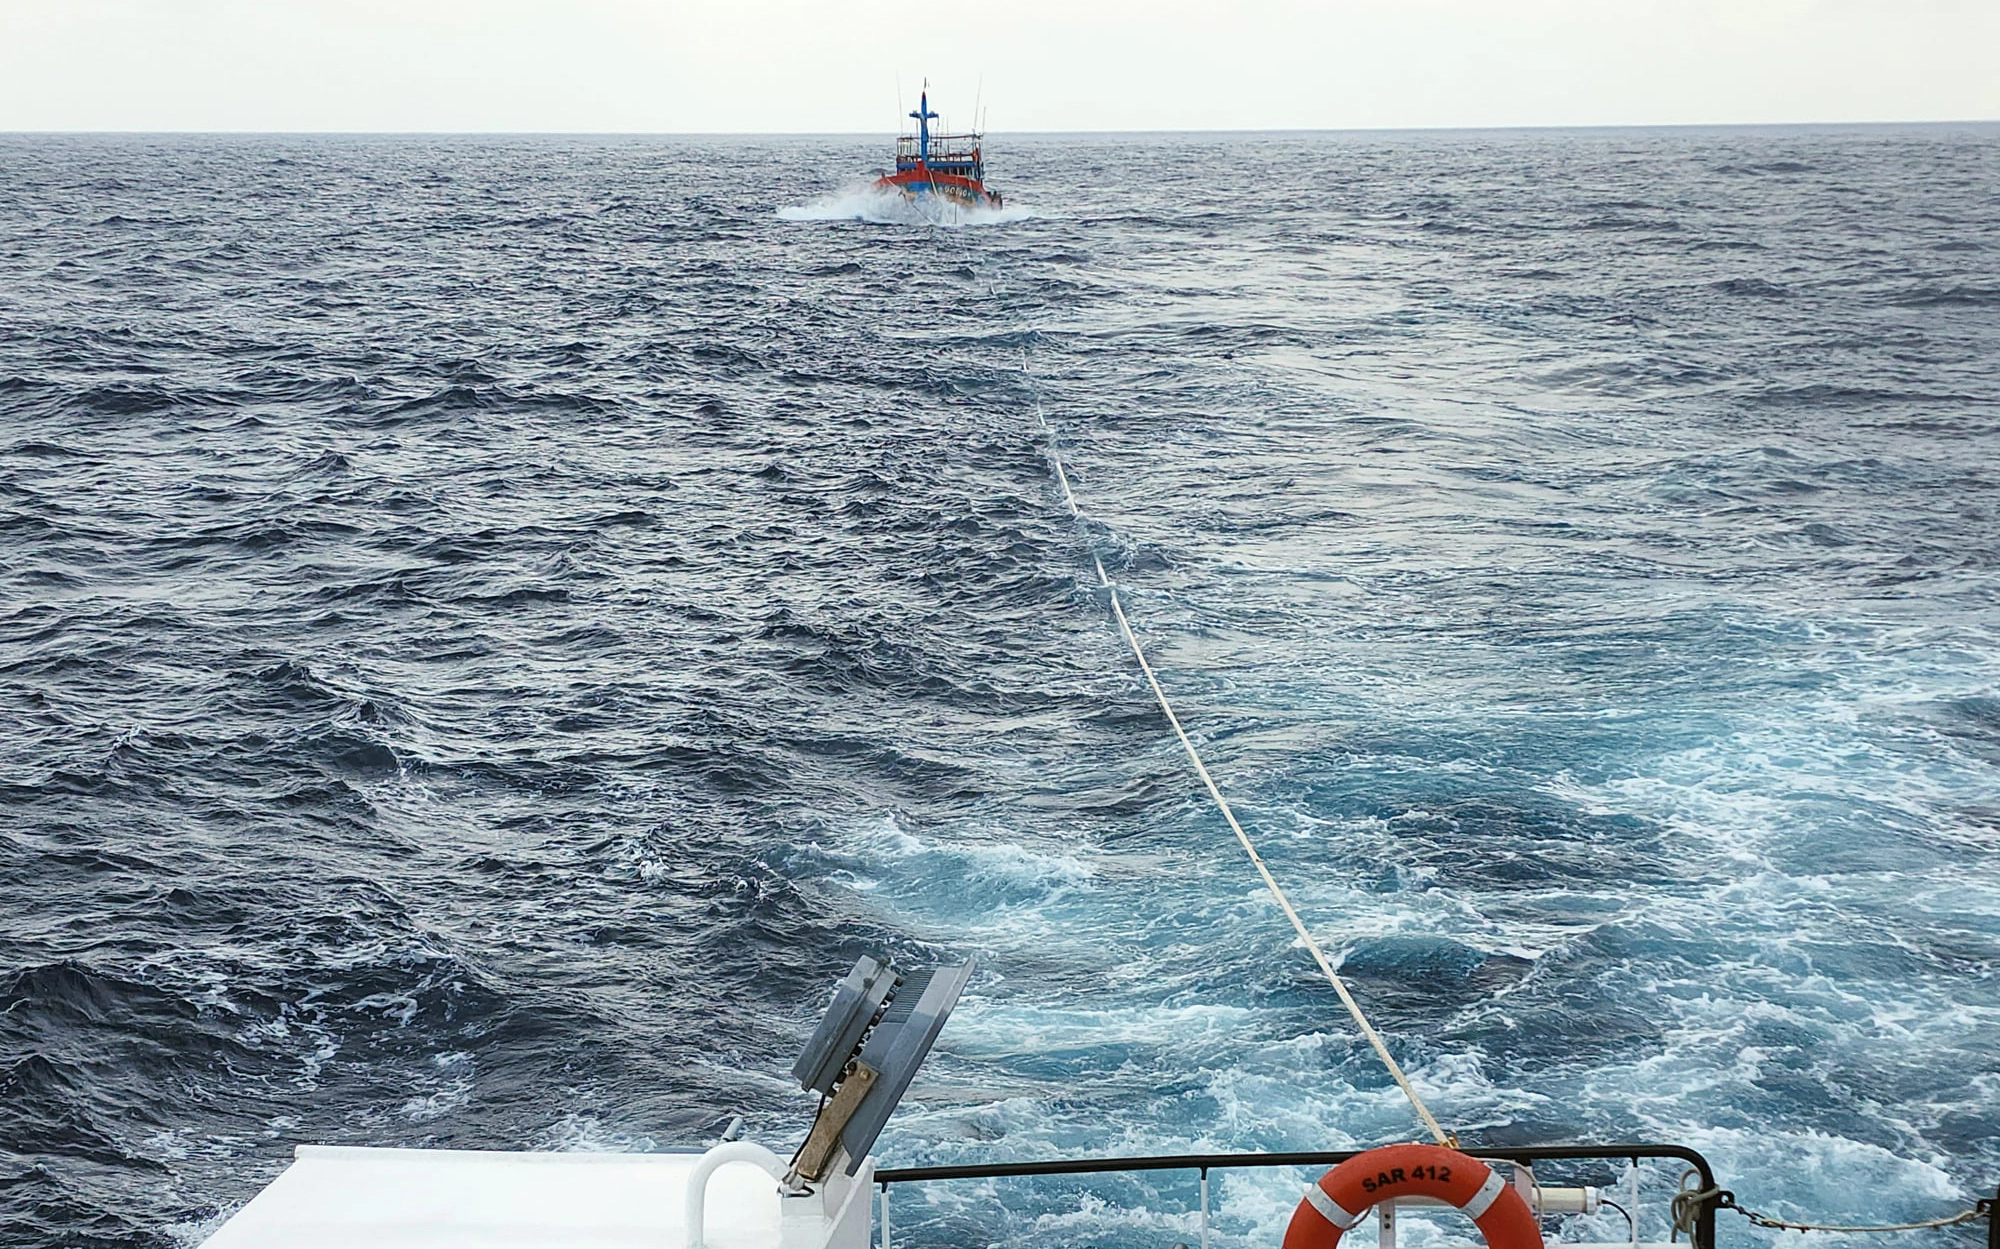 Cứu nạn thành công thuyền viên chiếc tàu có nguy cơ chìm trên vùng biển quần đảo Hoàng Sa